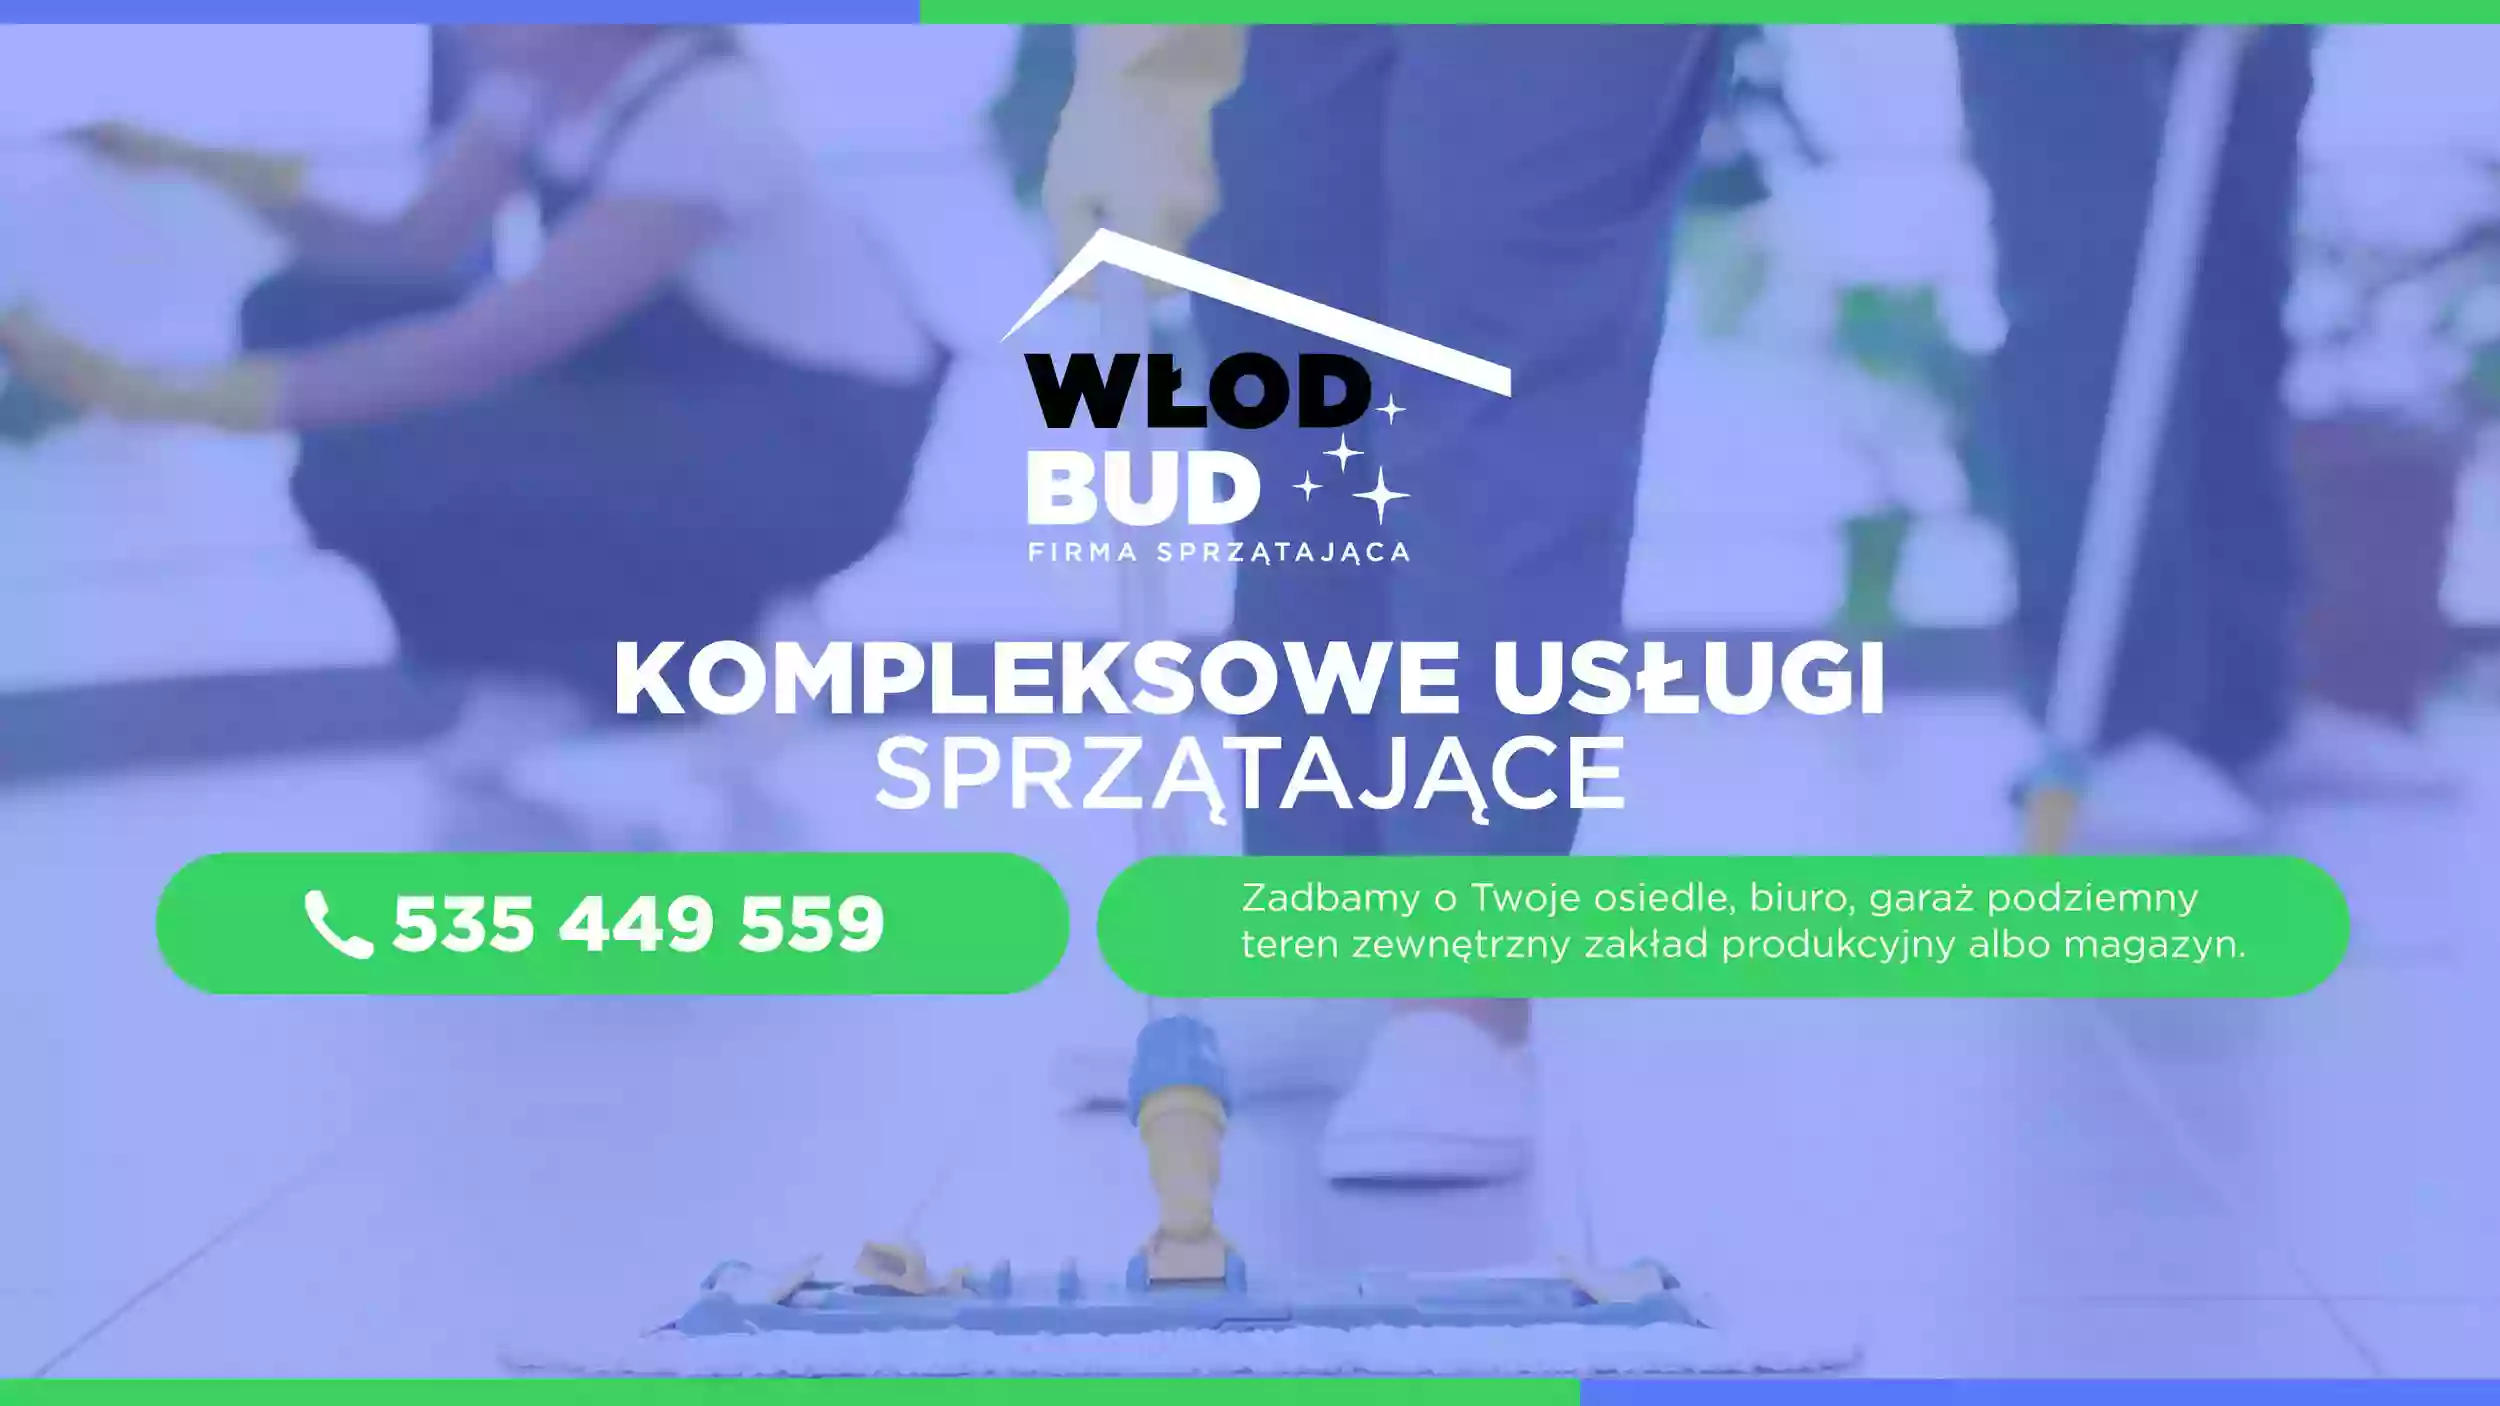 Włod-Bud - Firma Sprzątająca